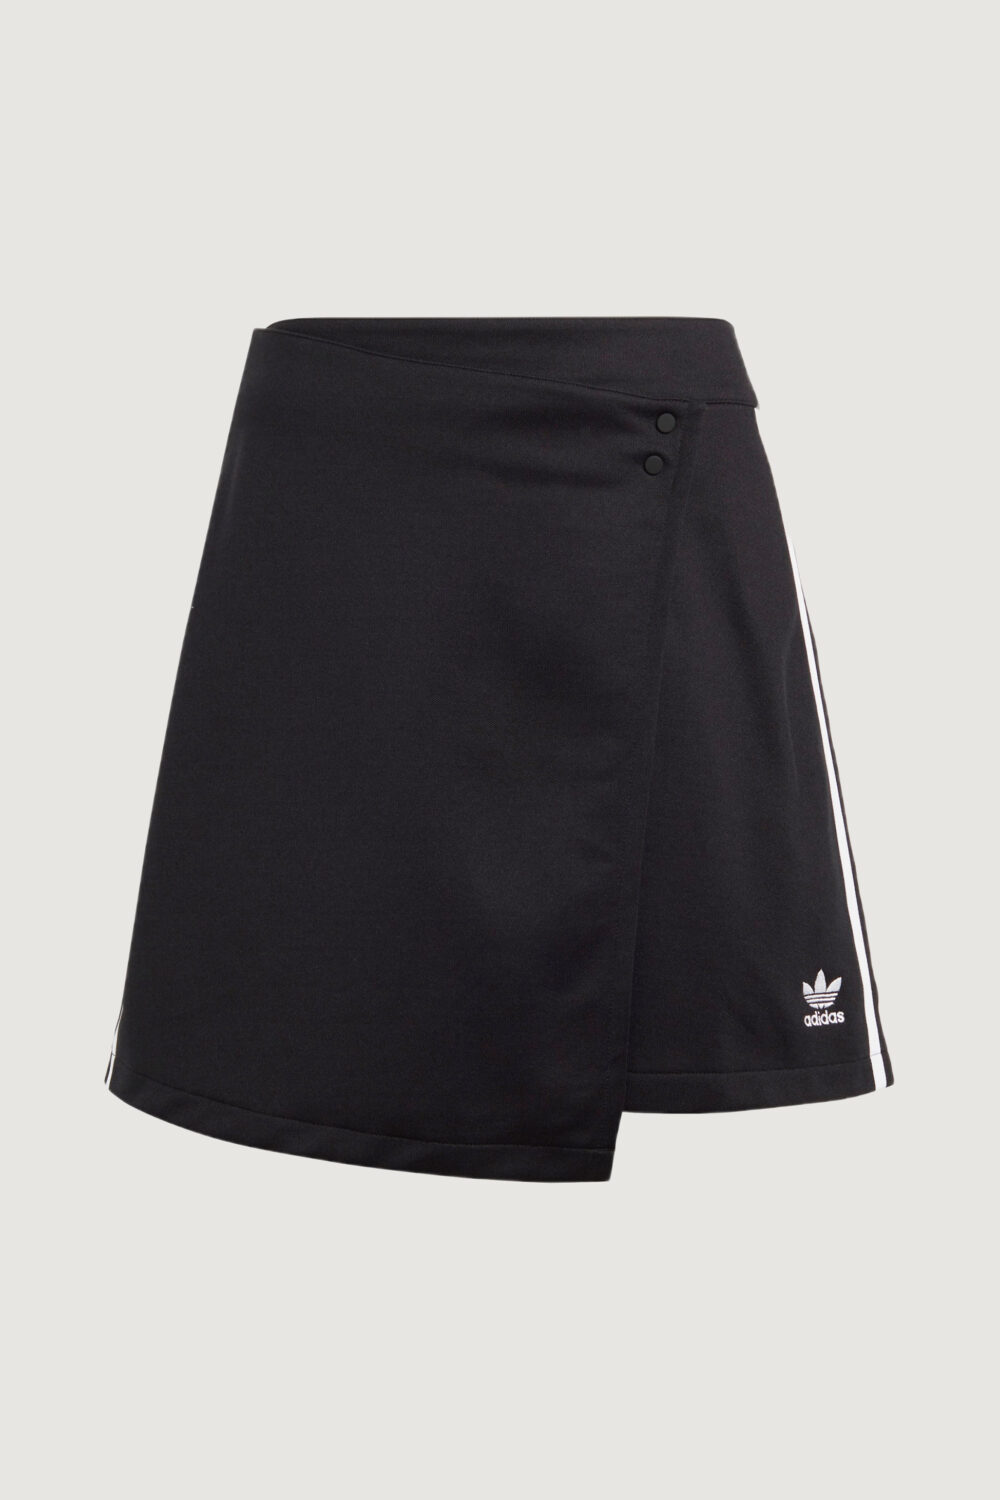 Minigonna Adidas wrapping skirt Nero - Foto 4